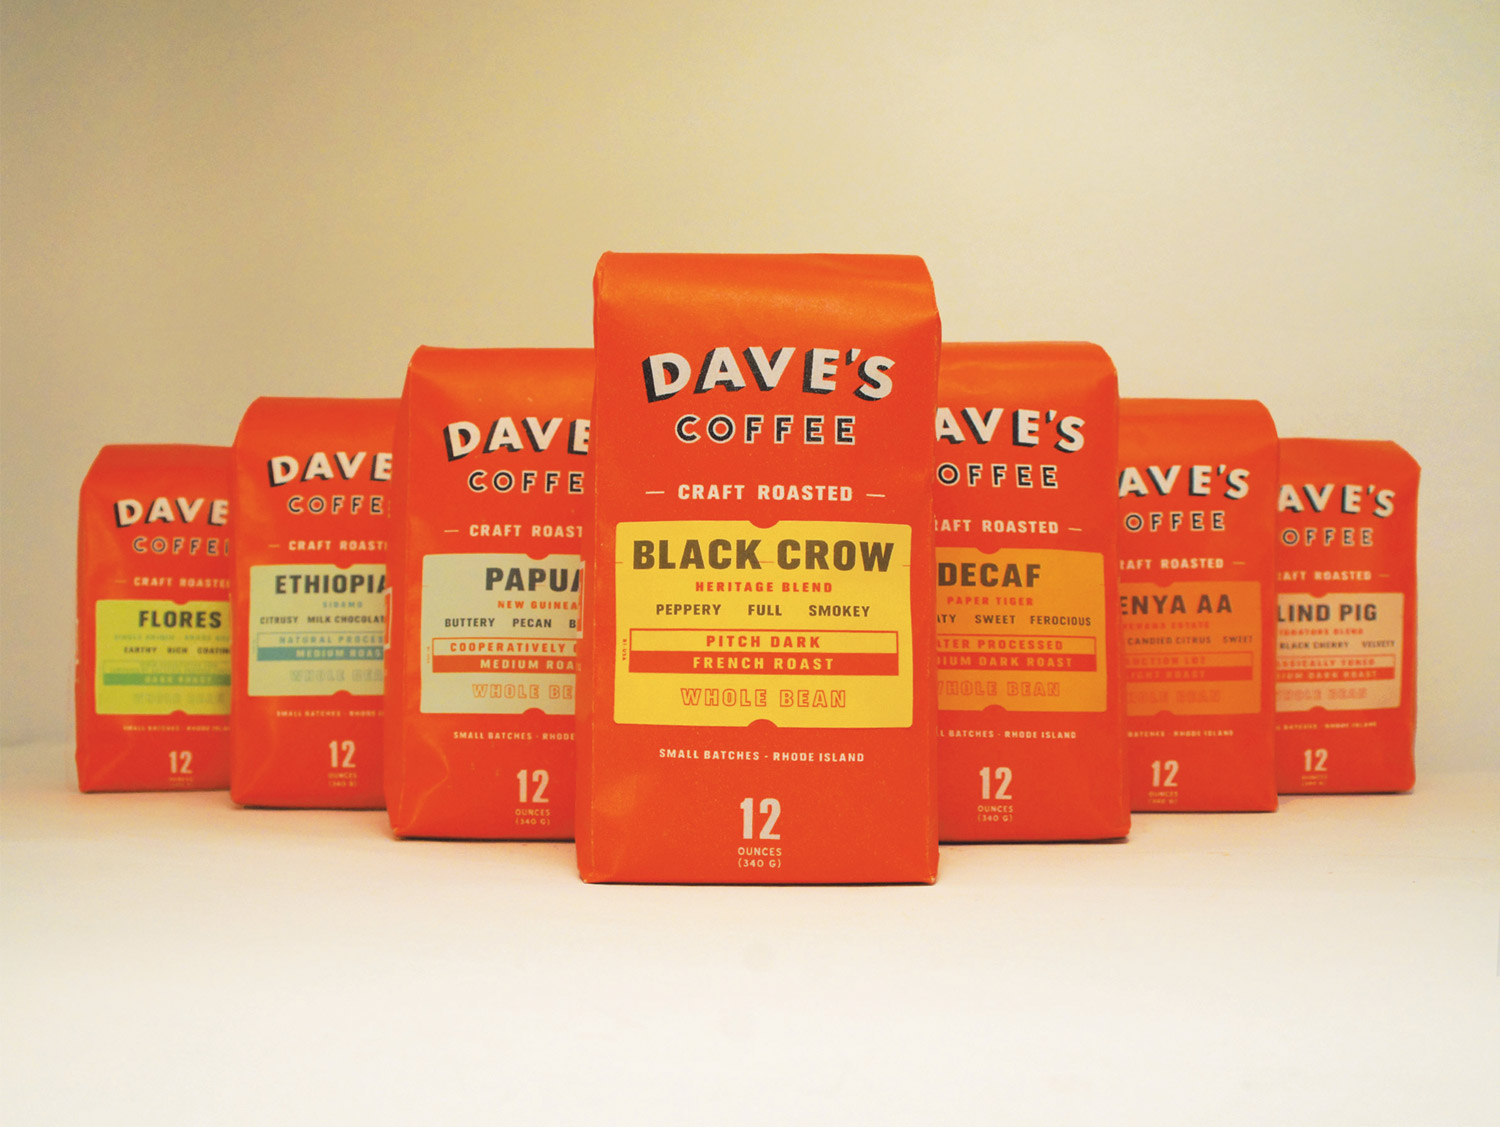 Daves-Coffee-Packaging-001.jpg